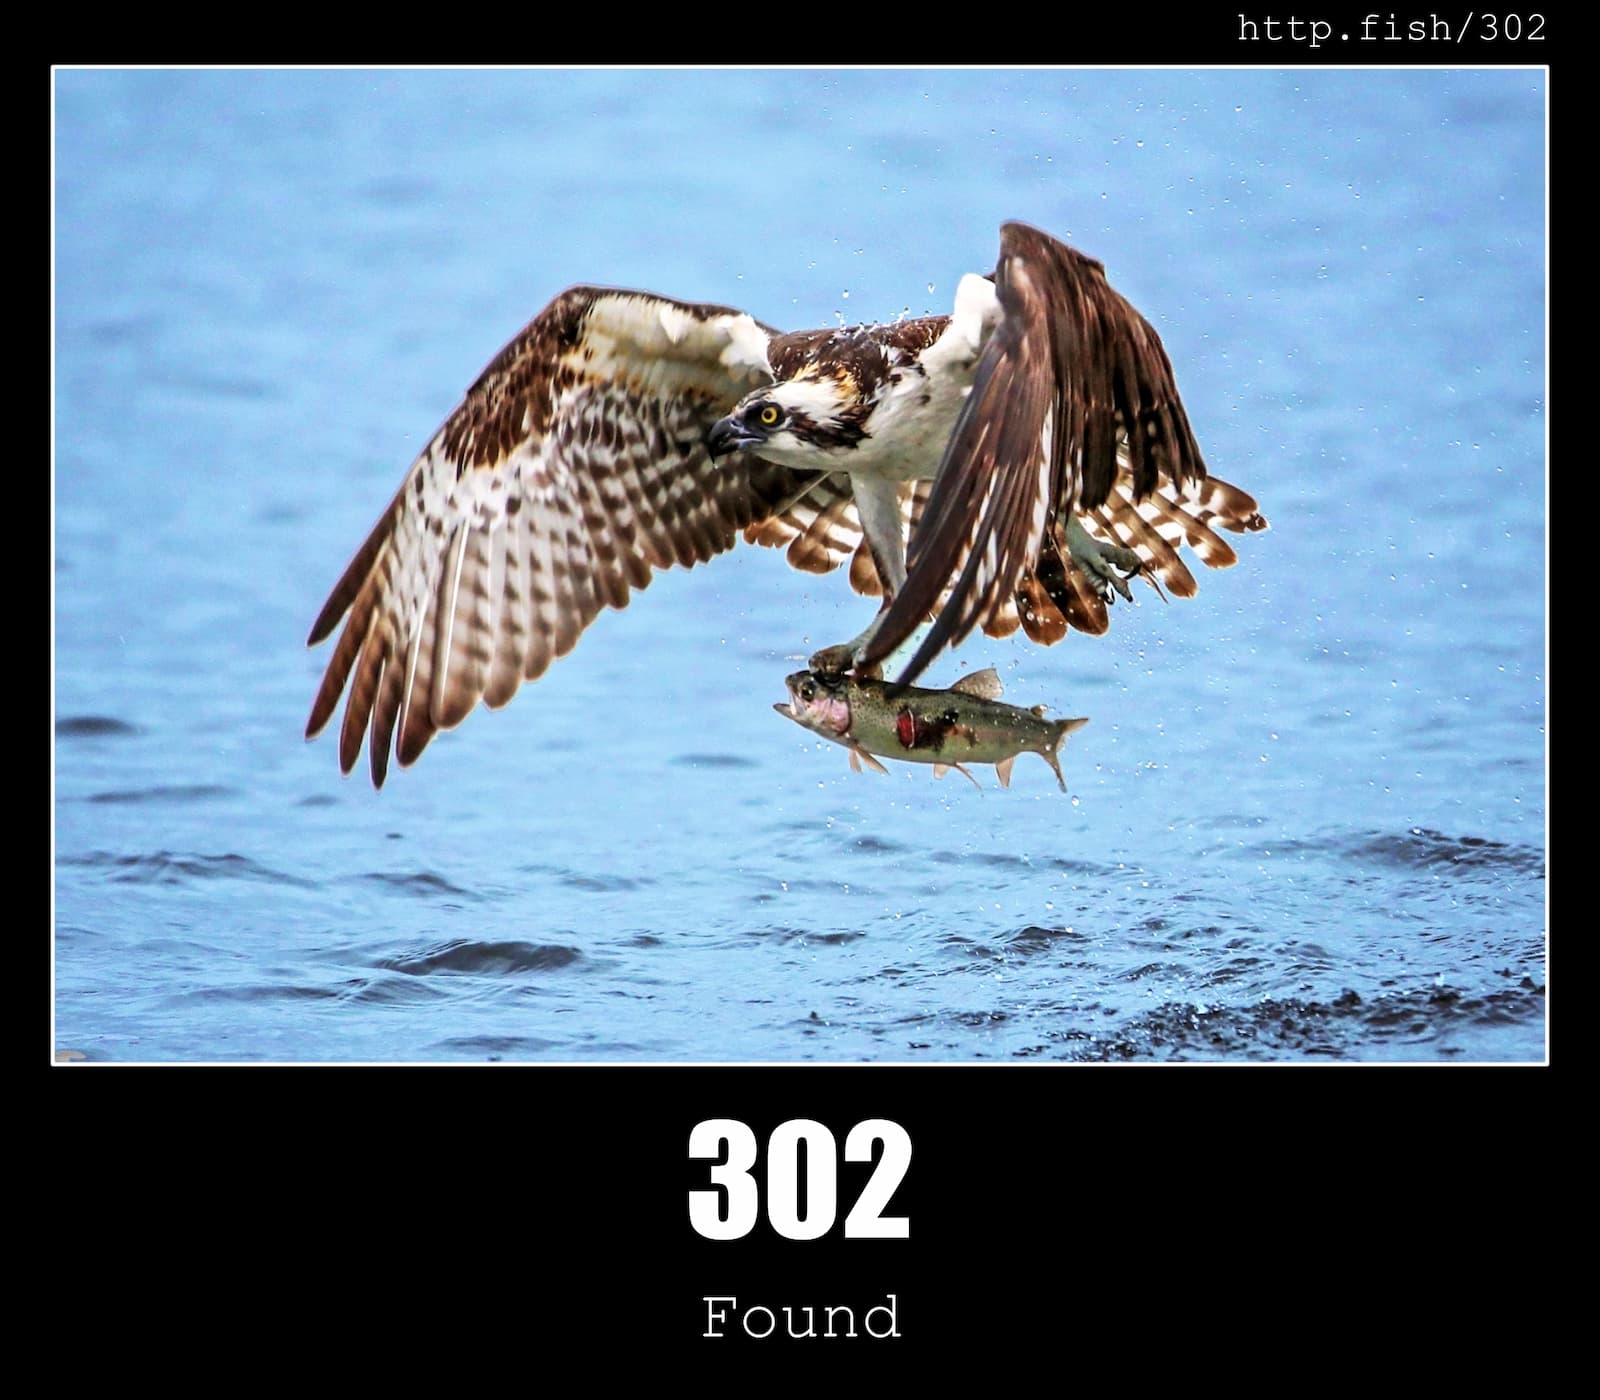 HTTP Status Code 302 Found & Fish